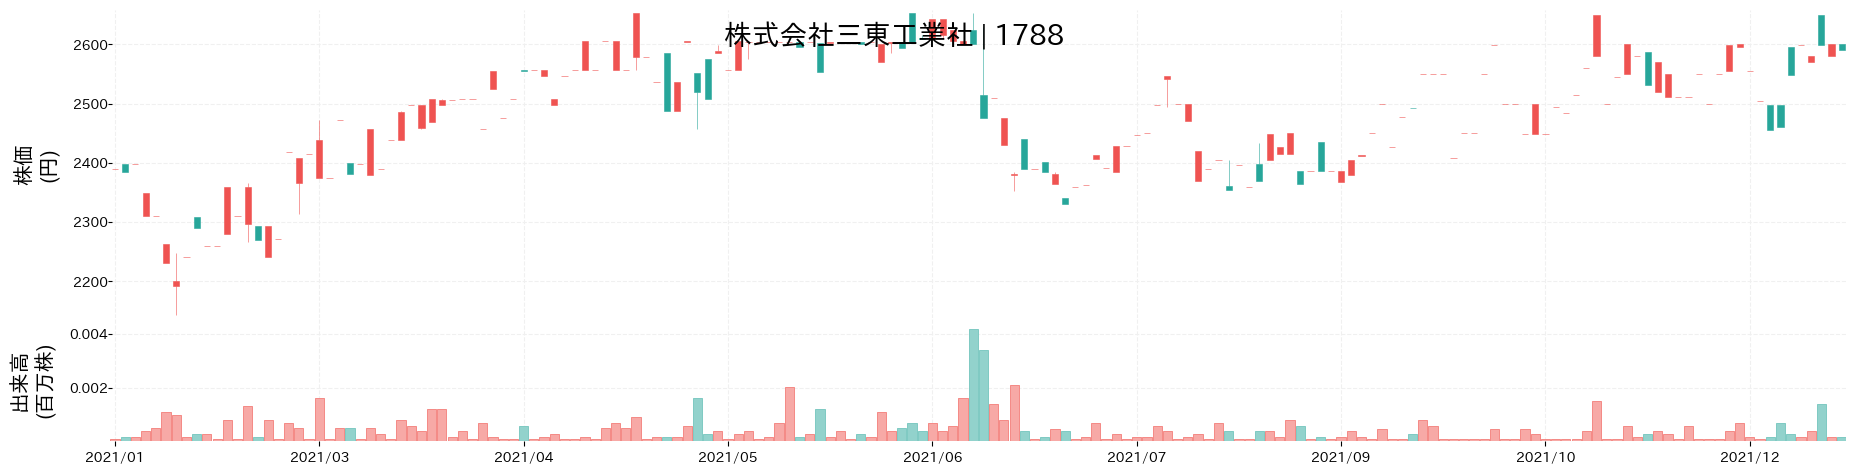 三東工業社の株価推移(2021)